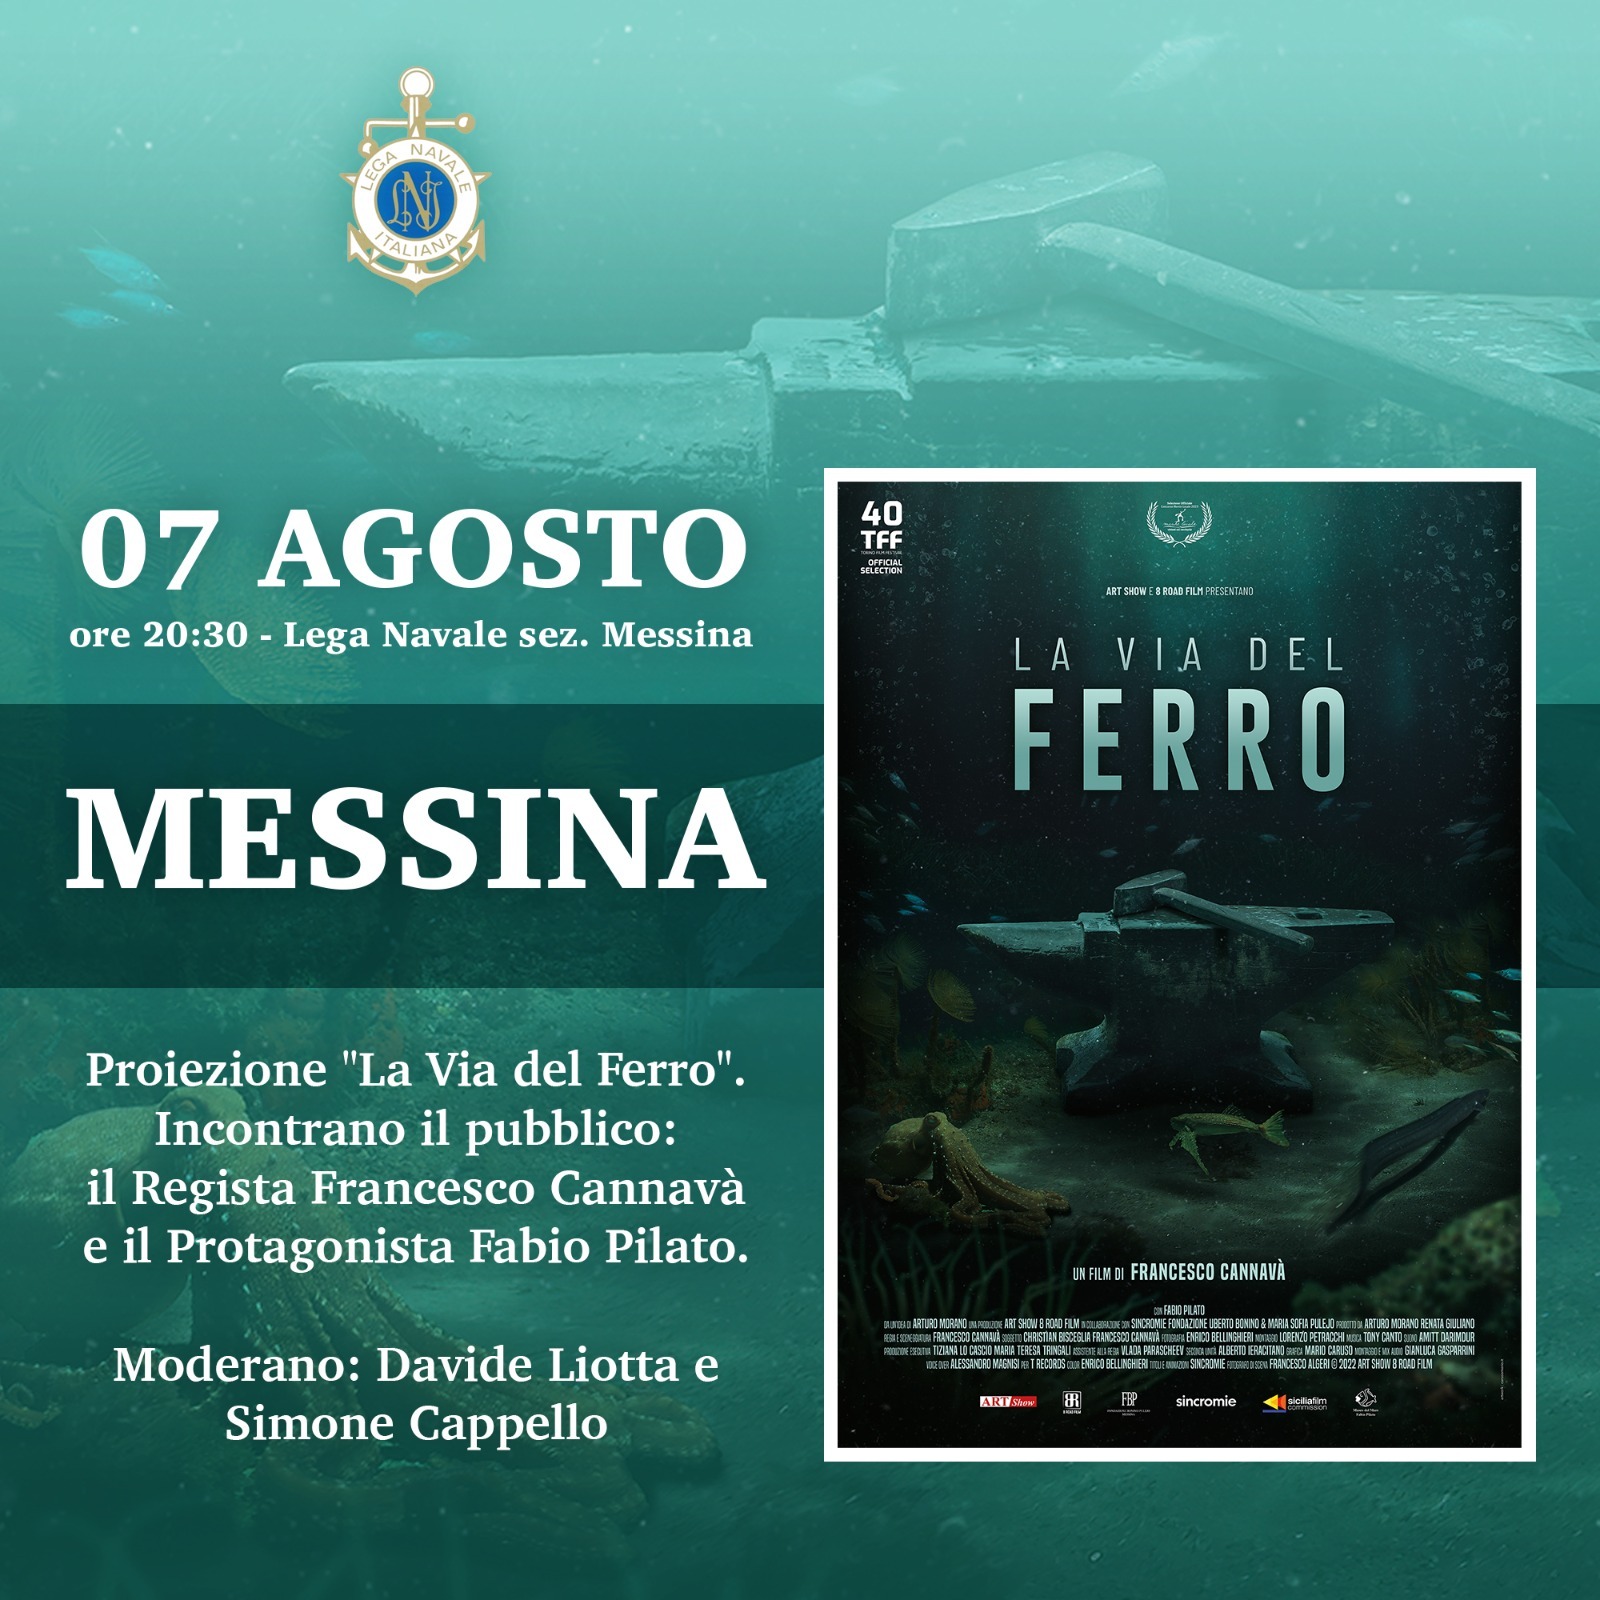 La via del ferro: mercoledì 7 agosto presentazione del docufilm alla Lega Navale di Messina